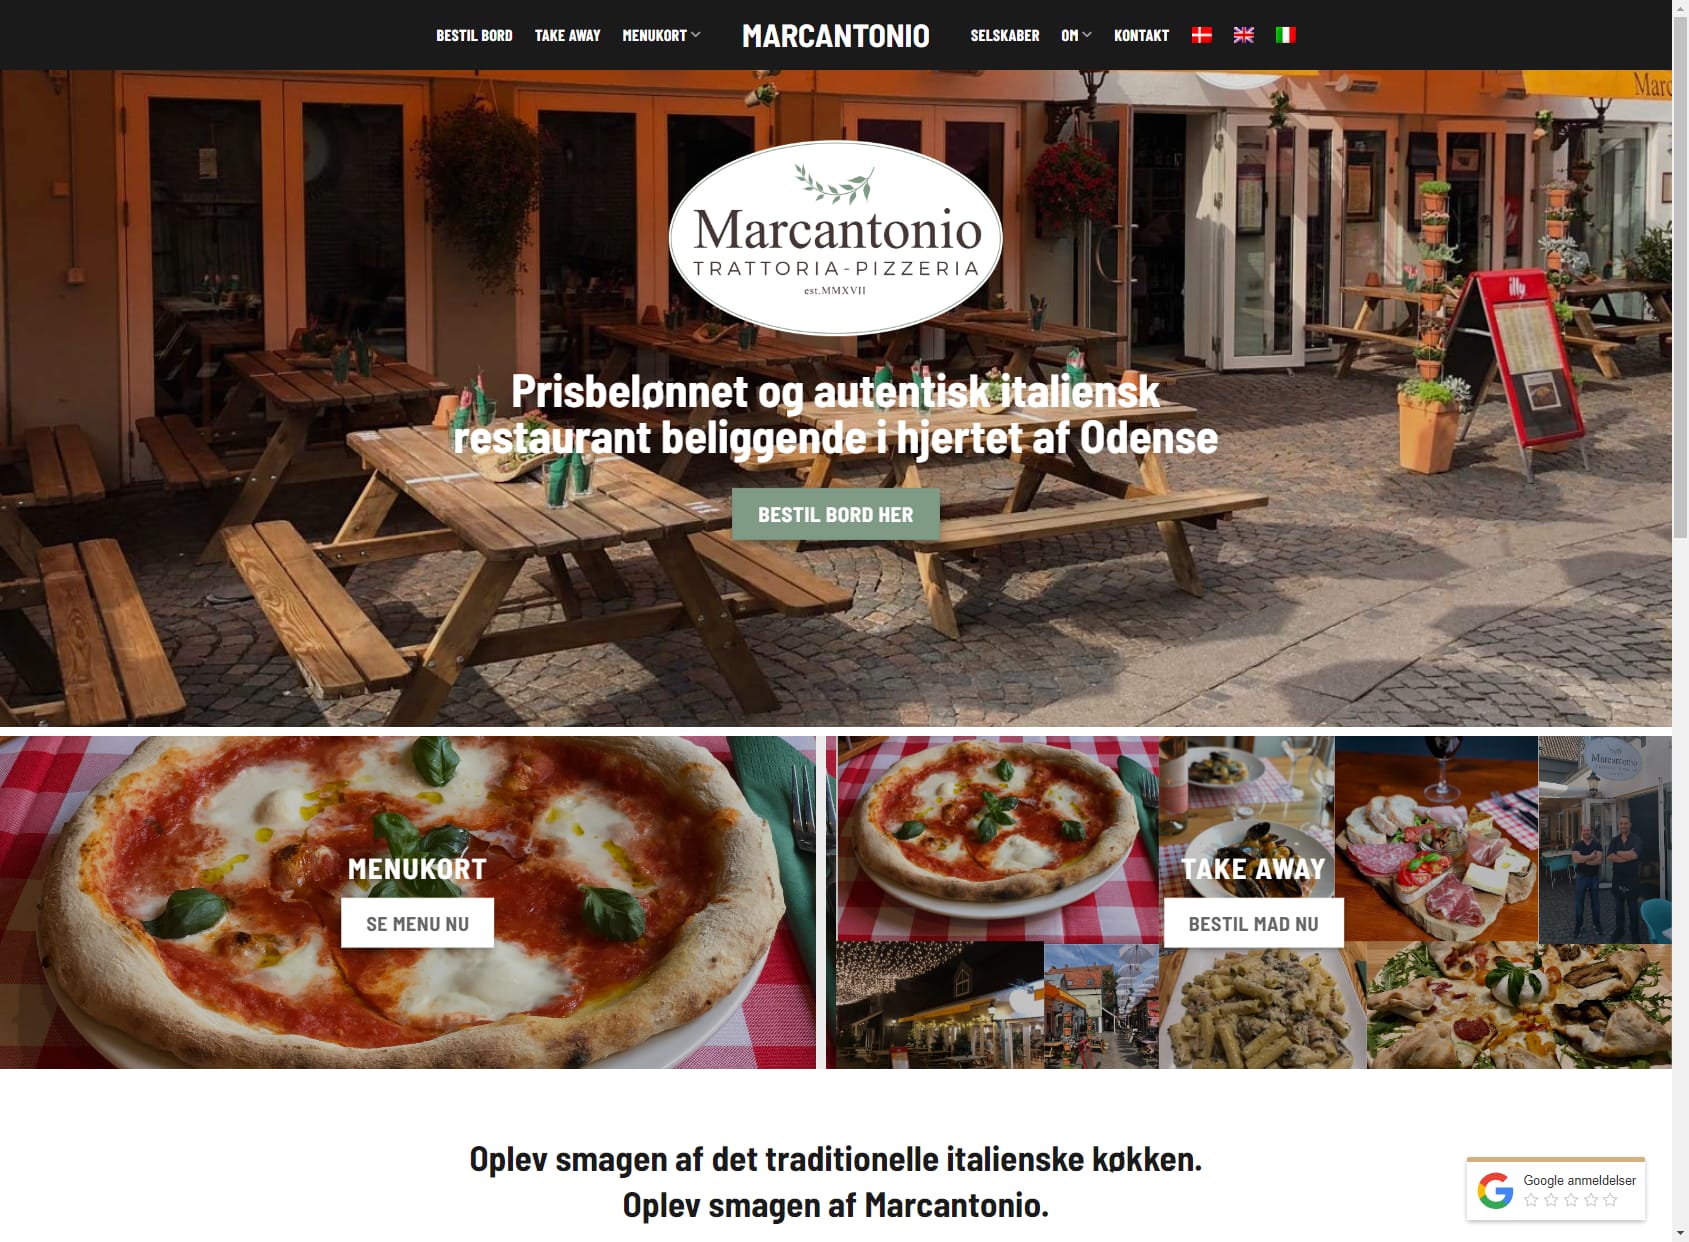 Marcantonio Trattoria - Pizzeria